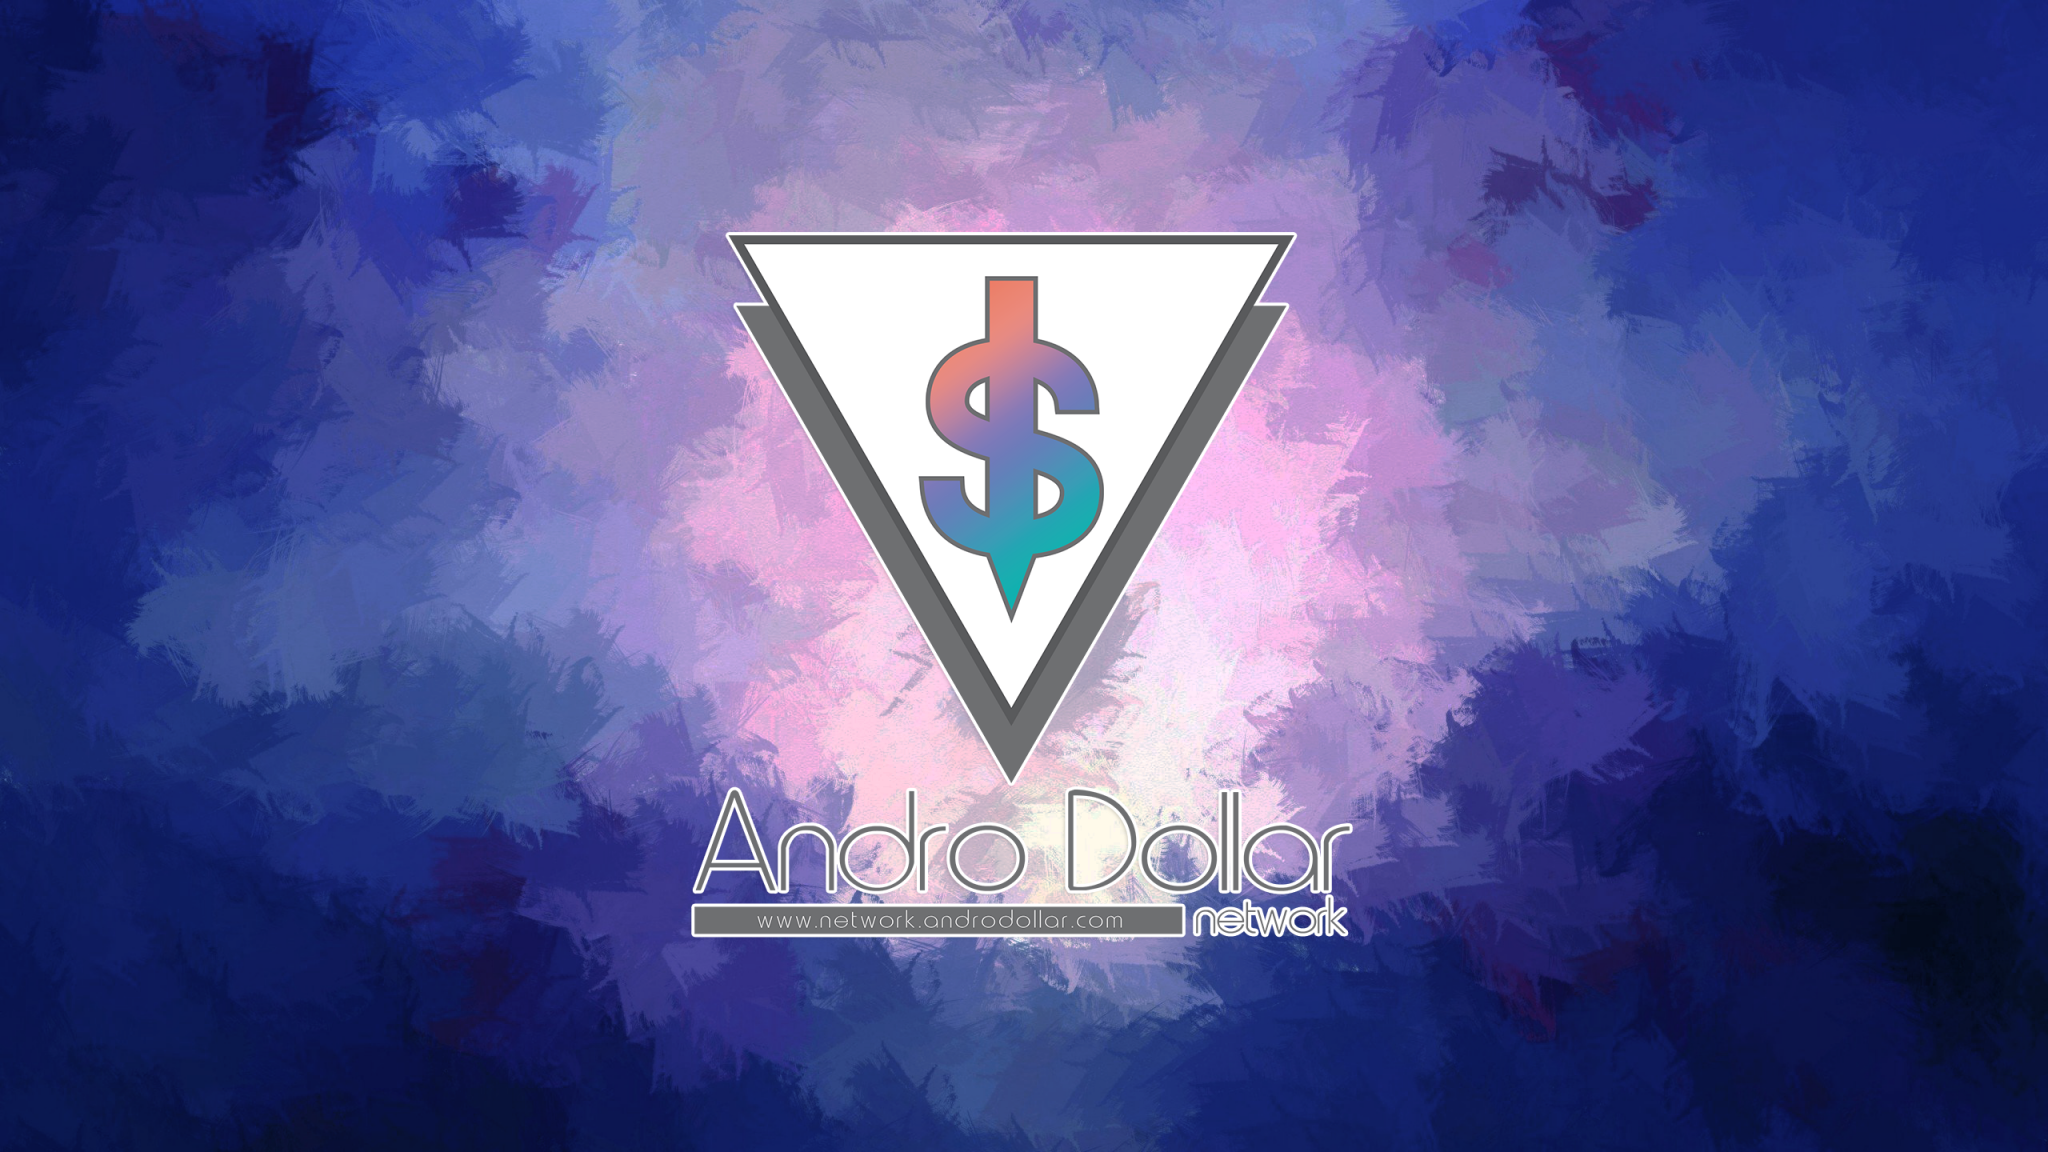 Andro Dollar Wallpaper - Andro Dollar Wallpaper